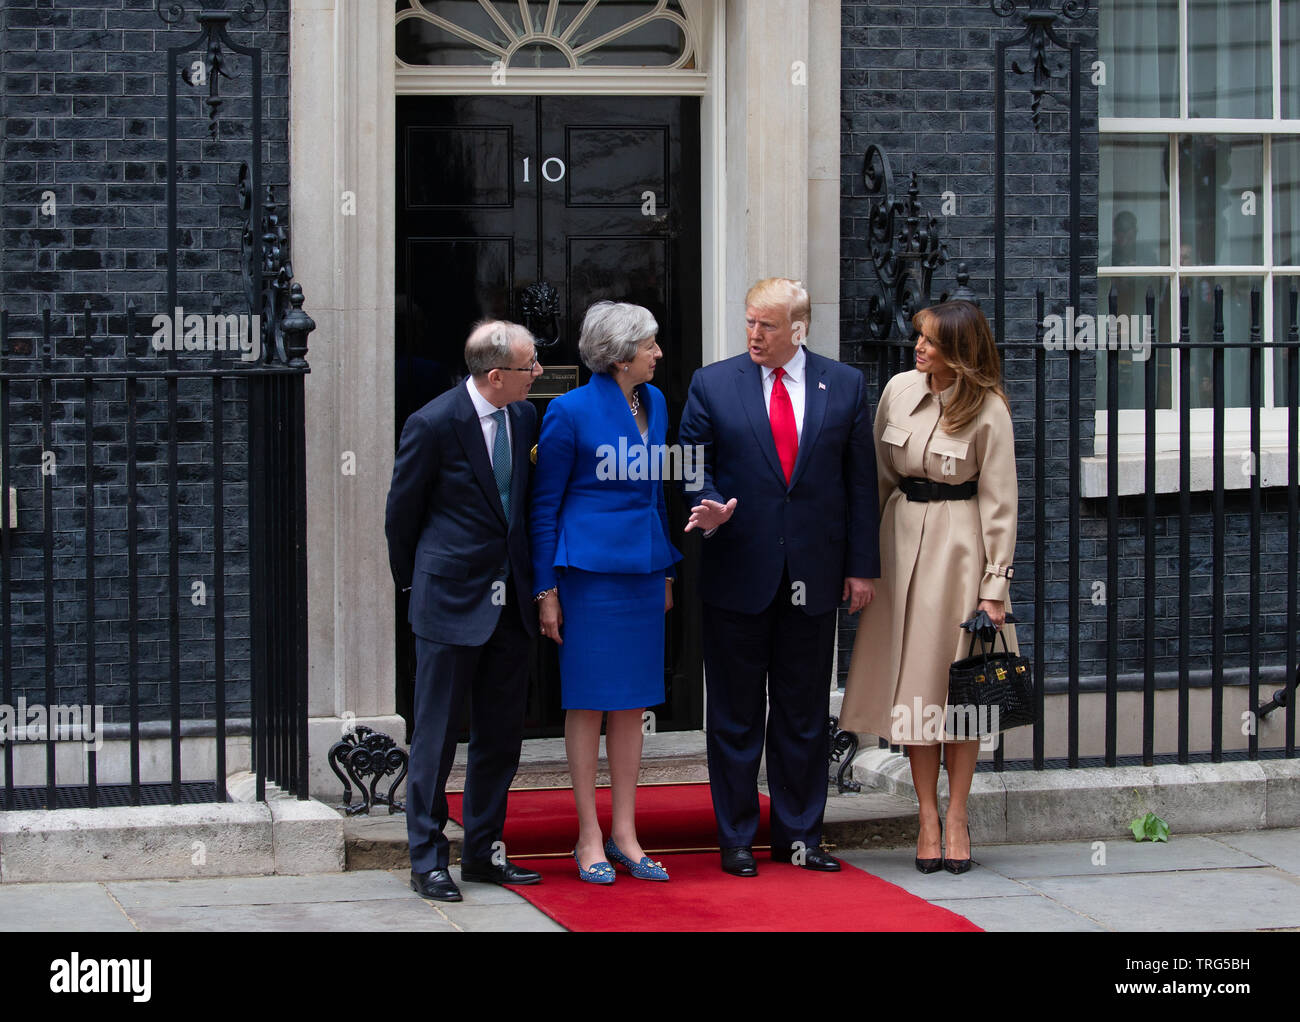 Philip peut, Theresa May, Donald Trump et Melania Trump sur les marches de 10 Downing Street comme le président bénéficie d'une visite d'Etat en Grande-Bretagne. Banque D'Images